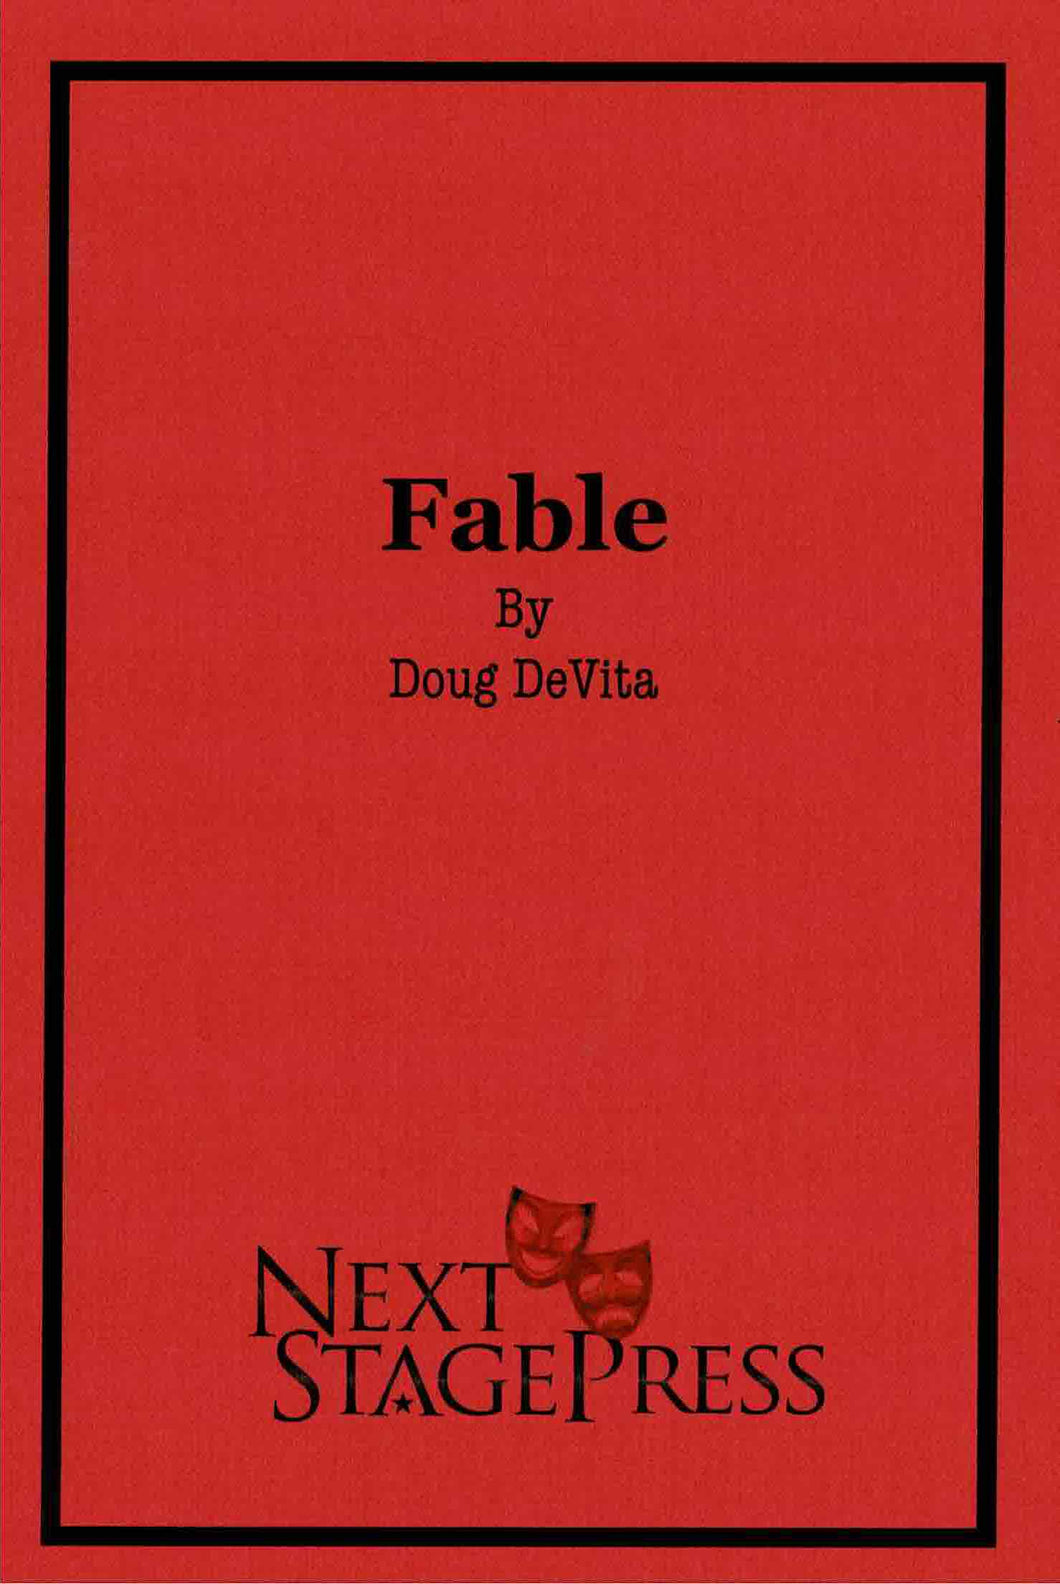 Fable by Doug DeVita